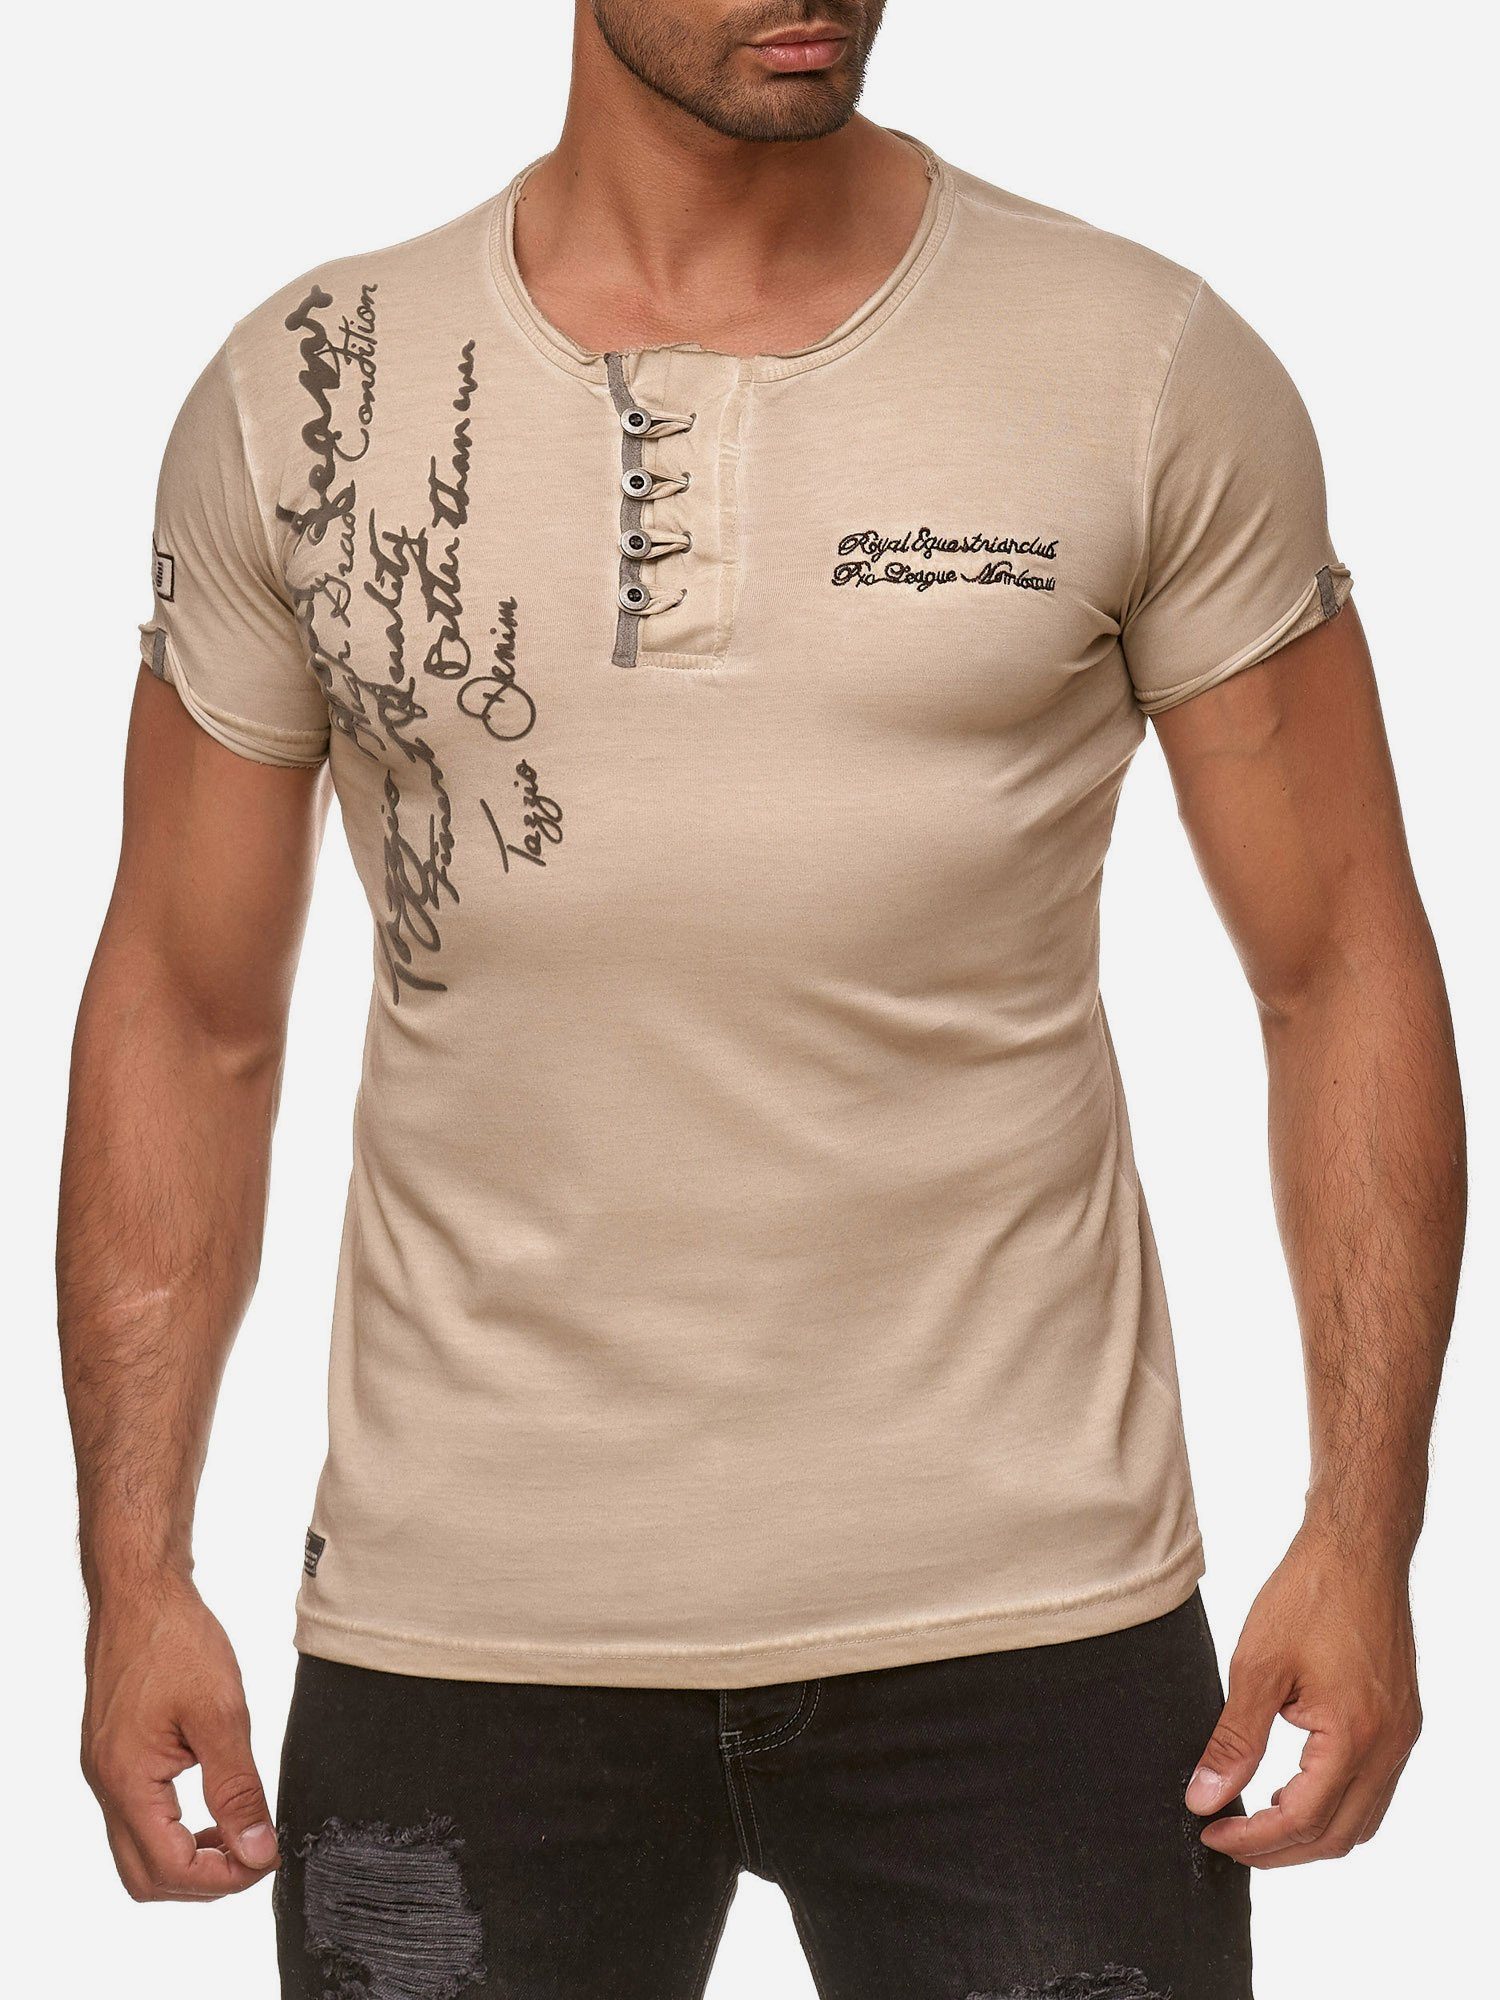 Tazzio T-Shirt 4050-1 Rundhalsshirt in Look Kragen Used beige offenem dezentem Ölwaschung und mit